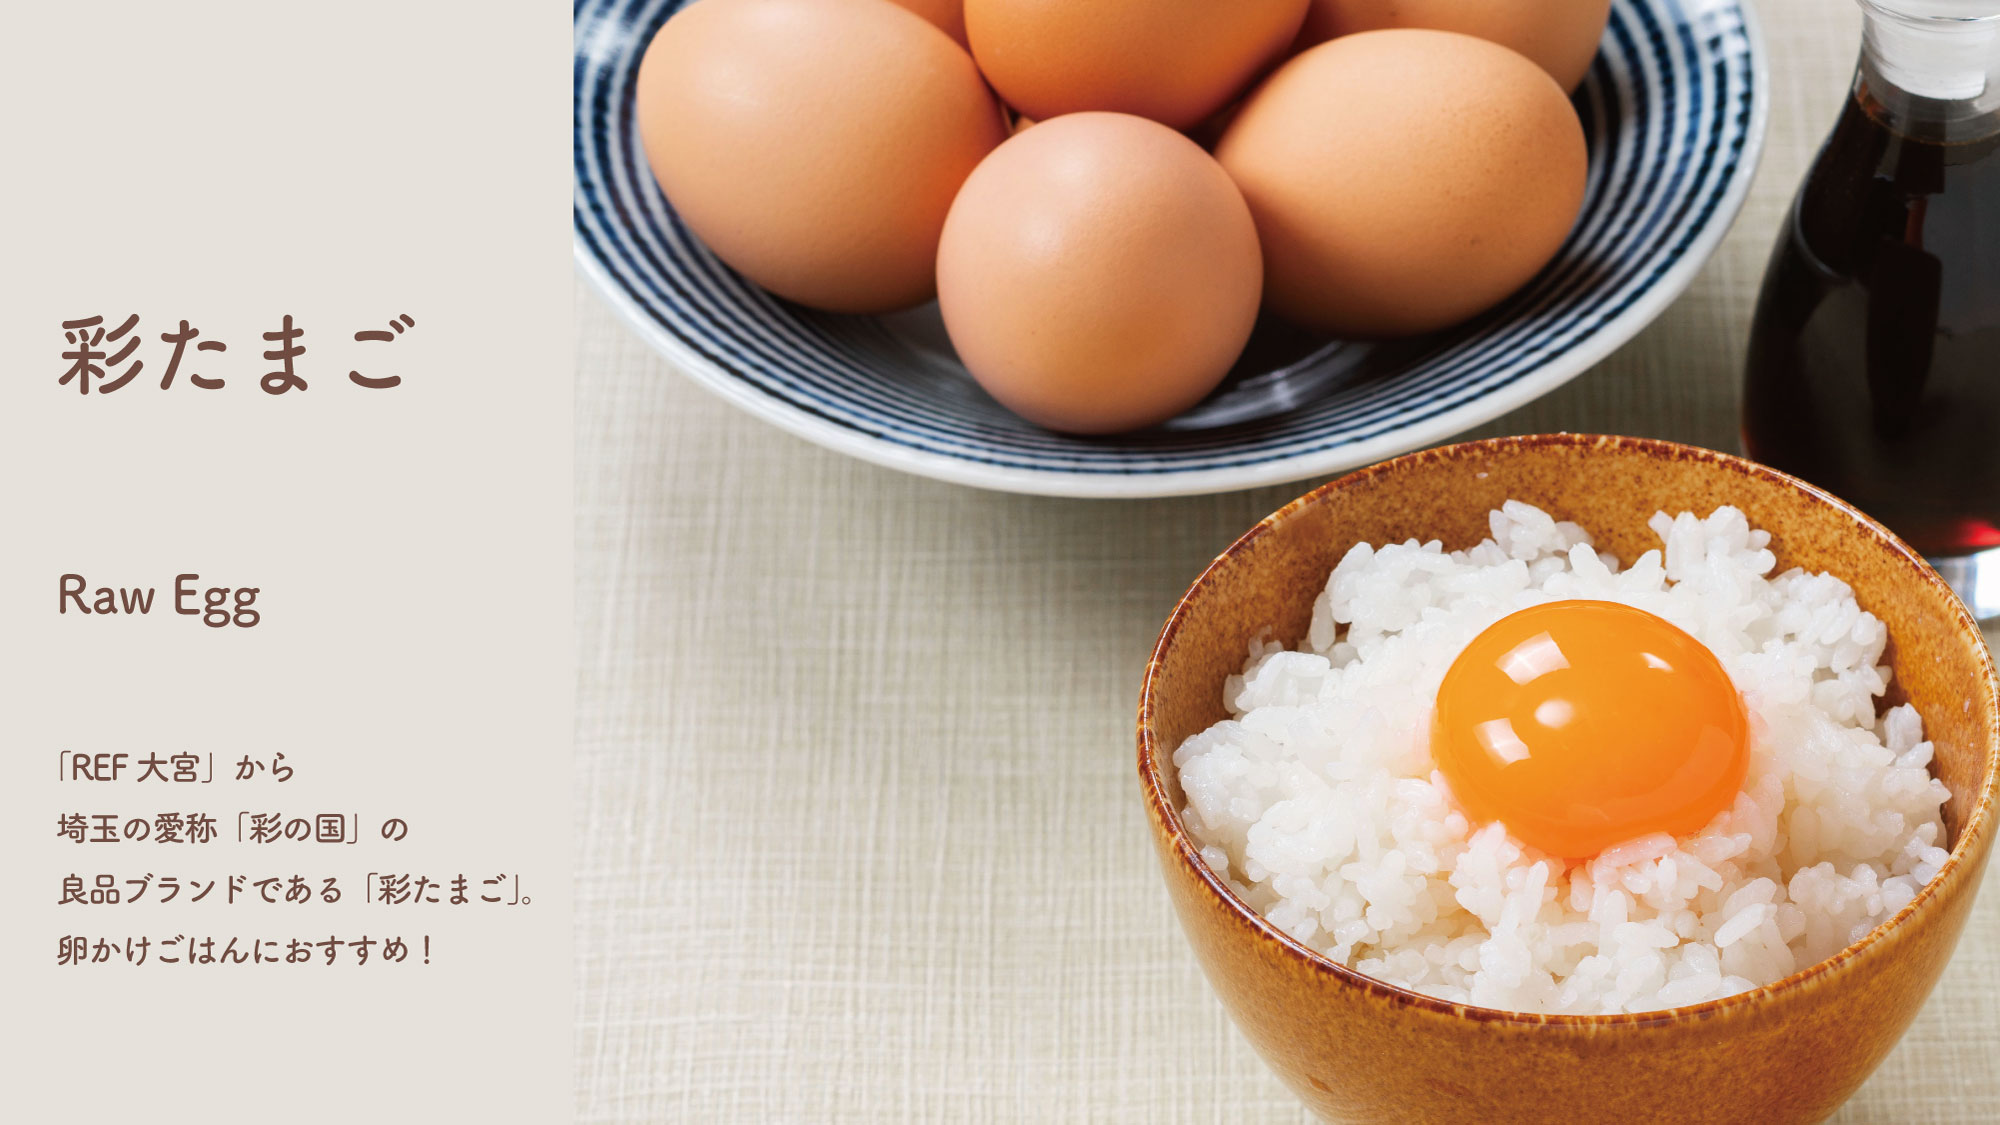 埼玉の愛称『彩の国』の良品ブランド『彩たまご』。卵かけごはんにおすすめ。